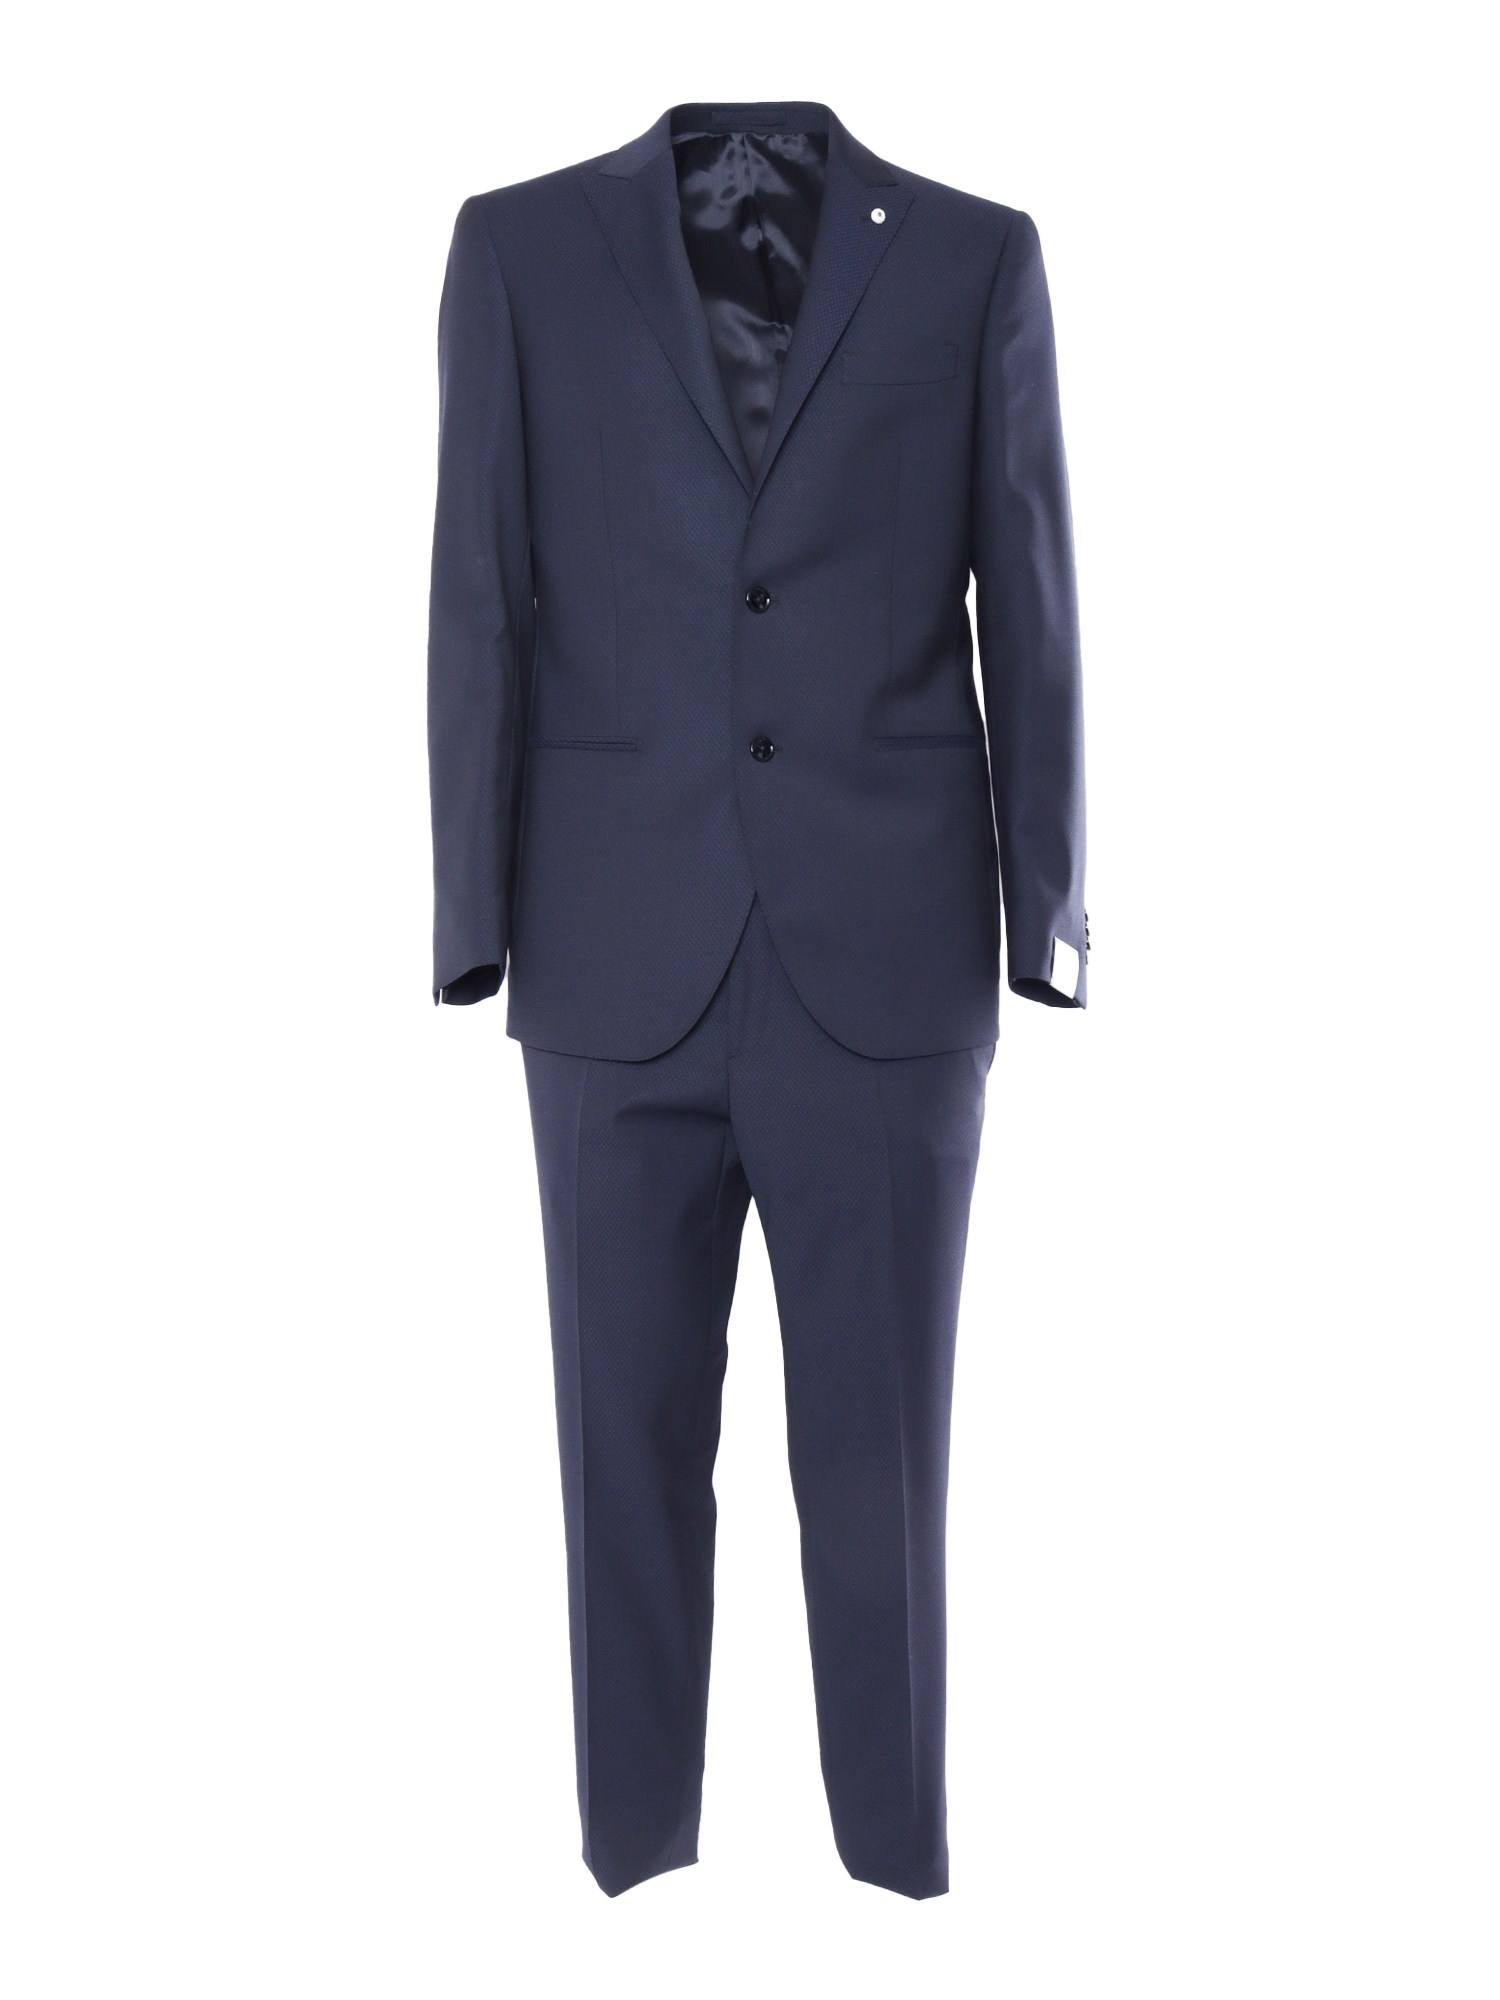 Brando-lubiam 2-pieces Elegant Suit In Blue